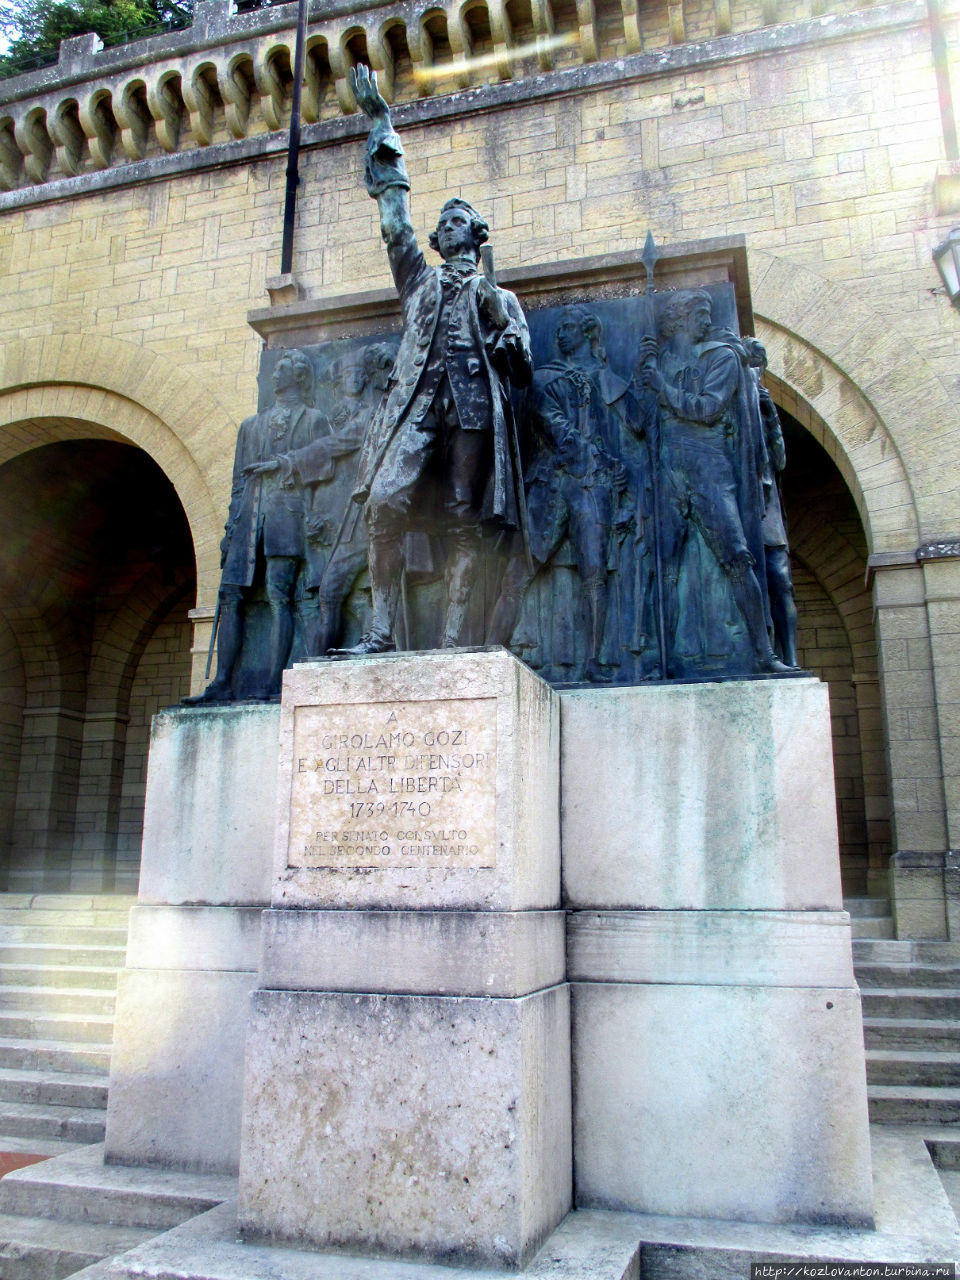 Памятник Джироламо Гоцци — капитану-регенту, руководителю восстания против войск кардинала Альберони, посягавших на независимость Сан Марино в 1739-40 годах. Сан-Марино, Сан-Марино